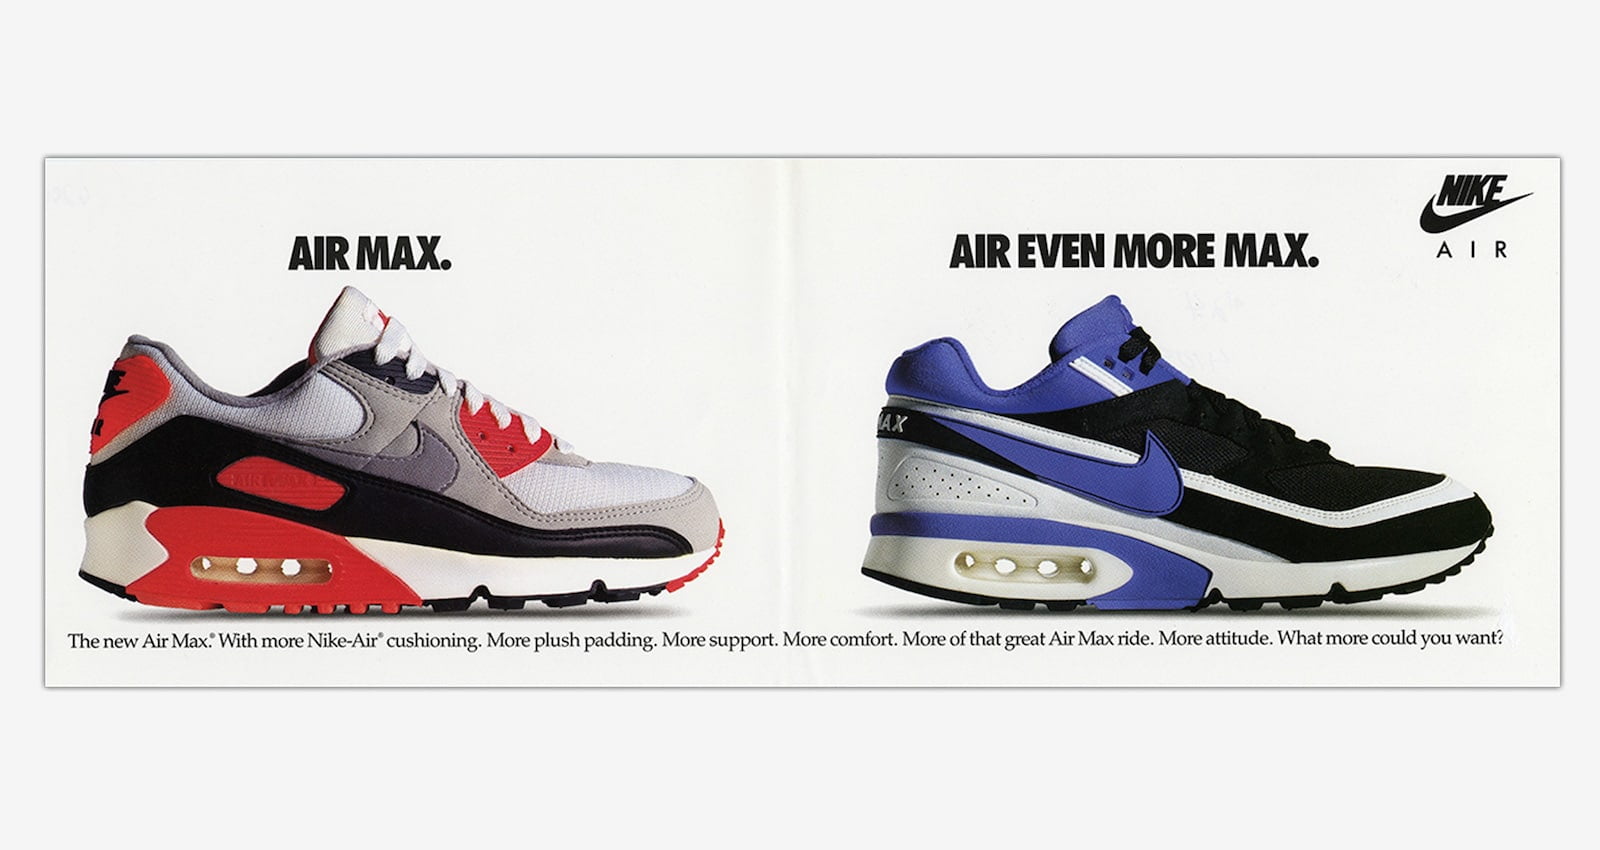 Lịch sử phát triển công nghệ Nike AIR - Đột phá công nghệ hay trò lố marketing - nike air max bw